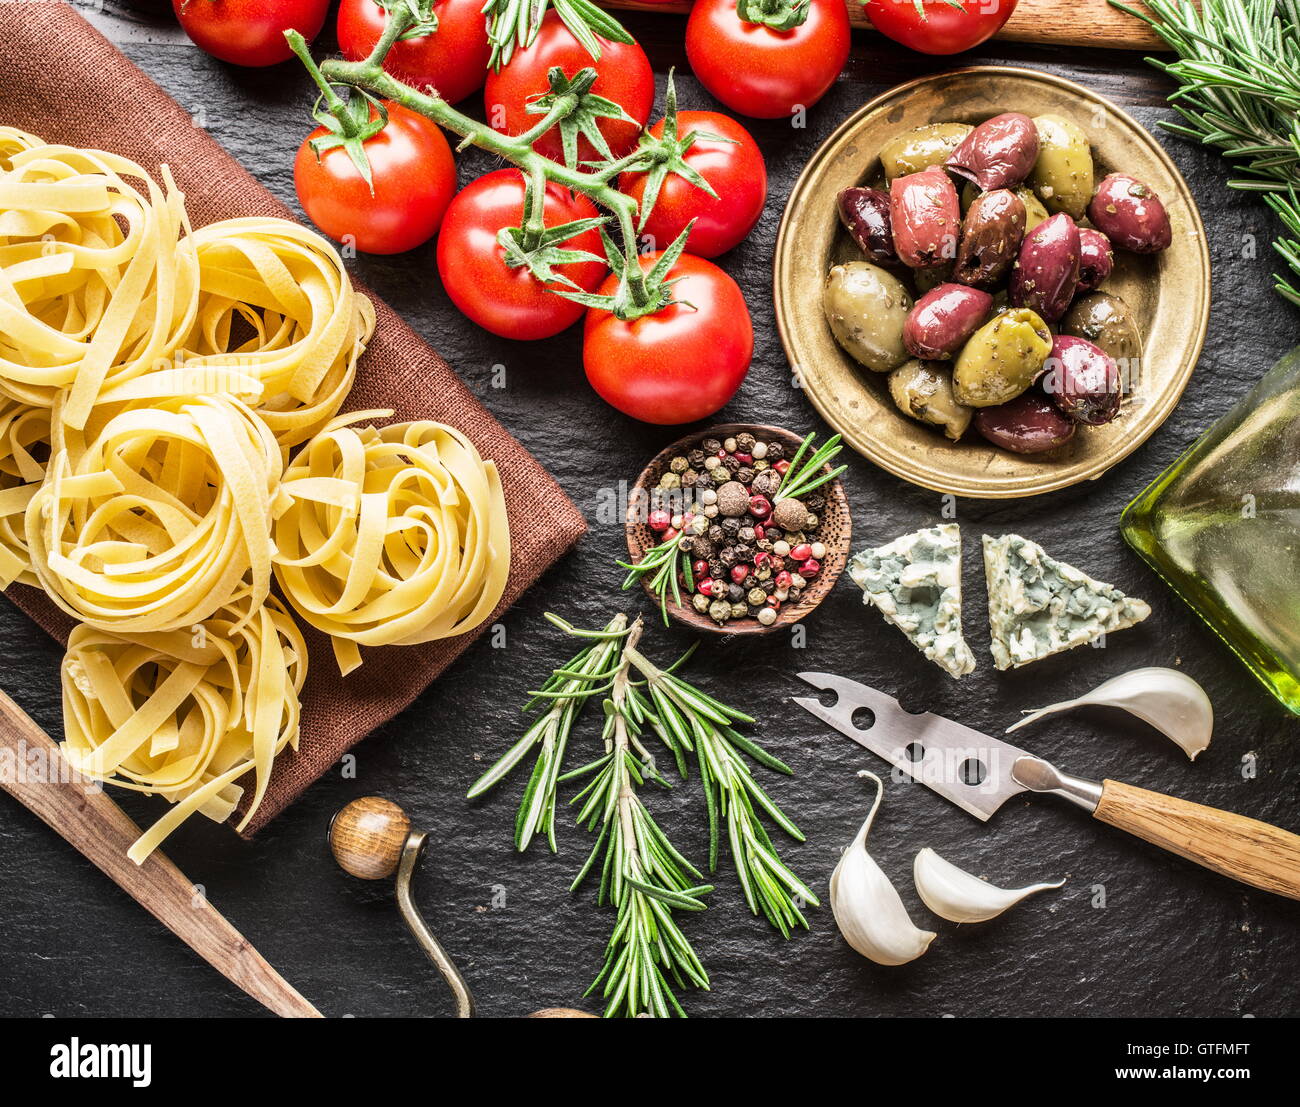 Ingrédients pâtes. Les tomates cerise, les pâtes spaghetti, romarin et d'épices sur une carte de graphite. Banque D'Images